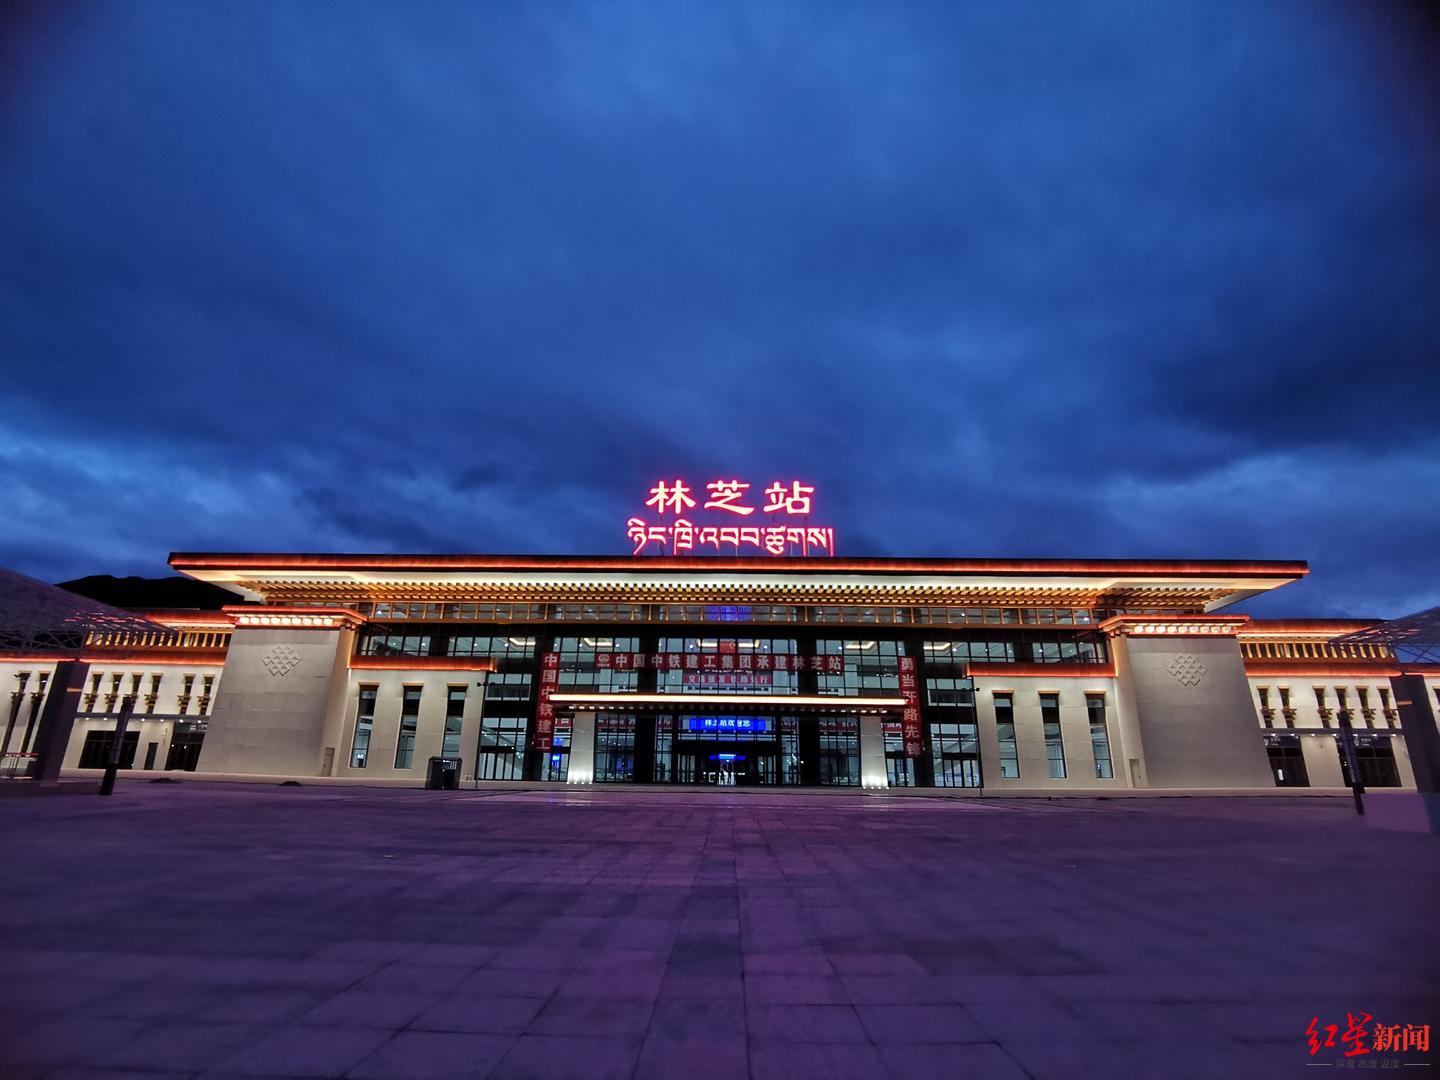 拉林铁路正式接入拉日铁路_拉萨要闻_西藏文化旅游创意园区管委会